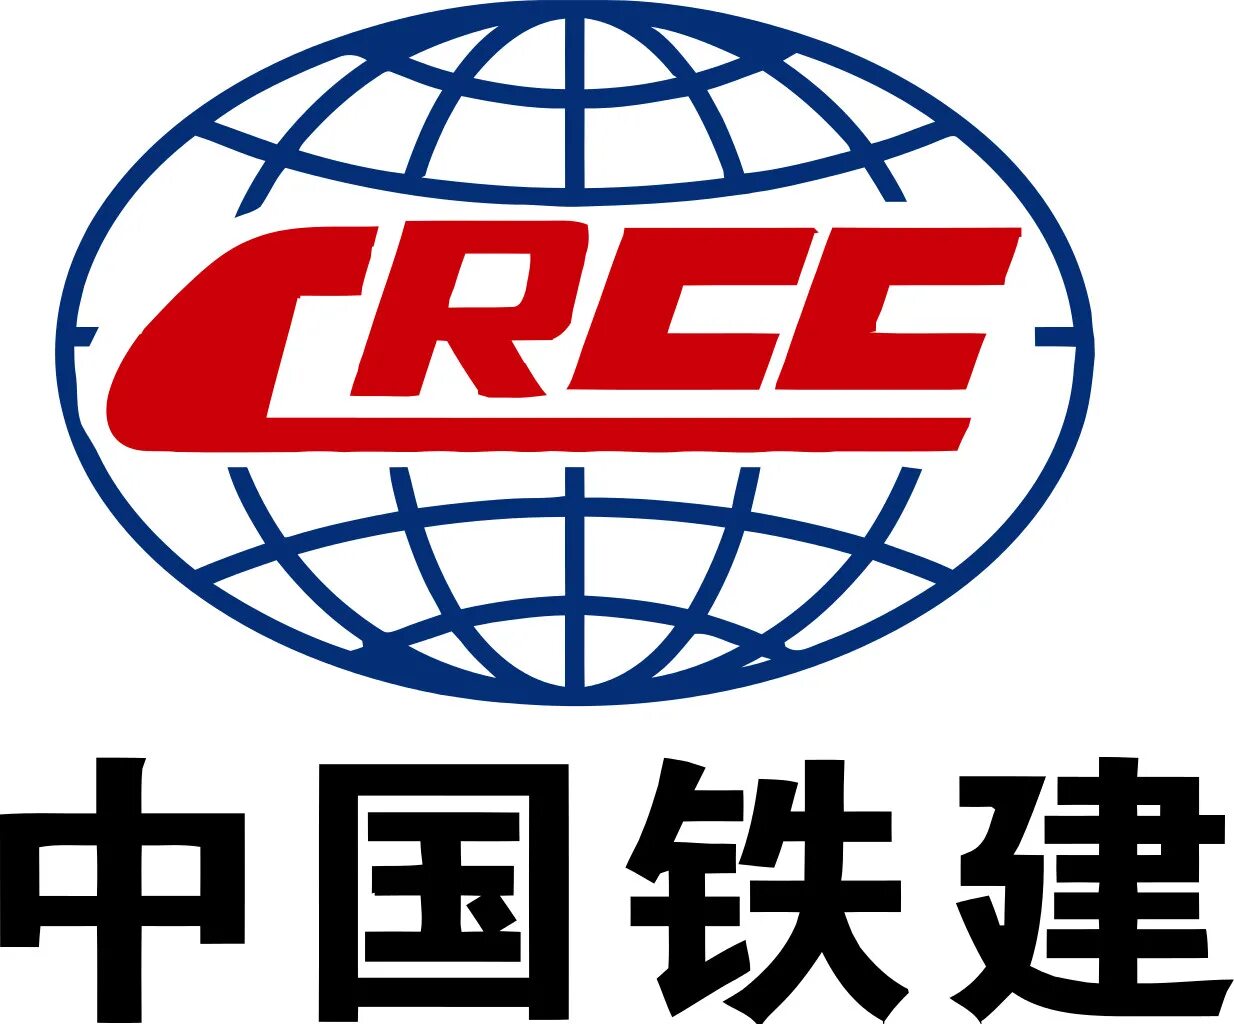 Эмблемы китайских. China Railway Construction Corporation (CRCC) Rus лого. CRCC Rus китайская компания. China Railway Construction Corporation (CRCC). CRCC Rus логотип.